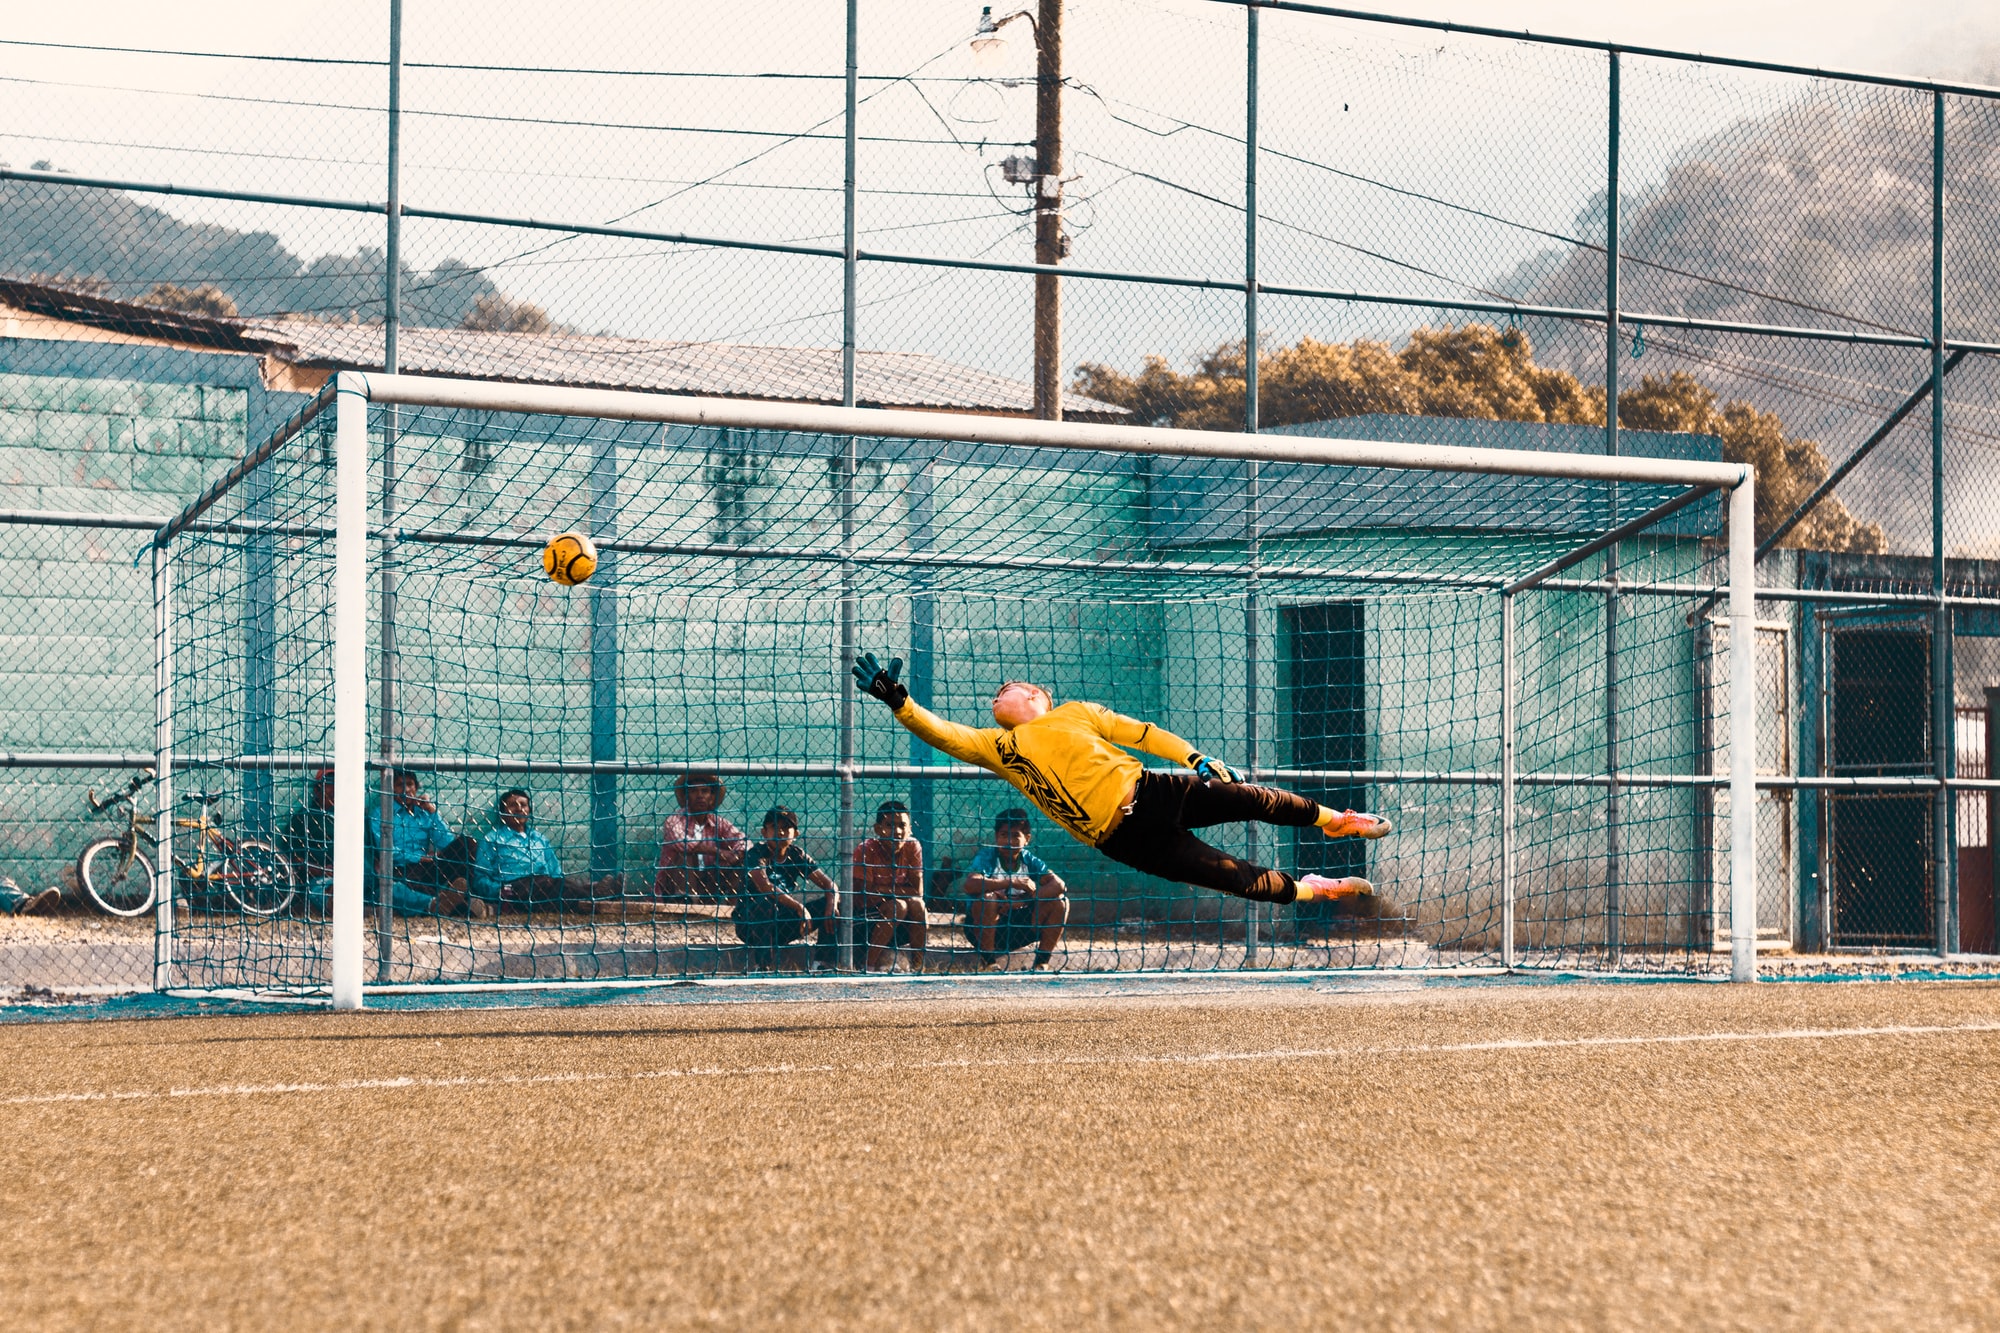 Soccer goalie reaching for ball